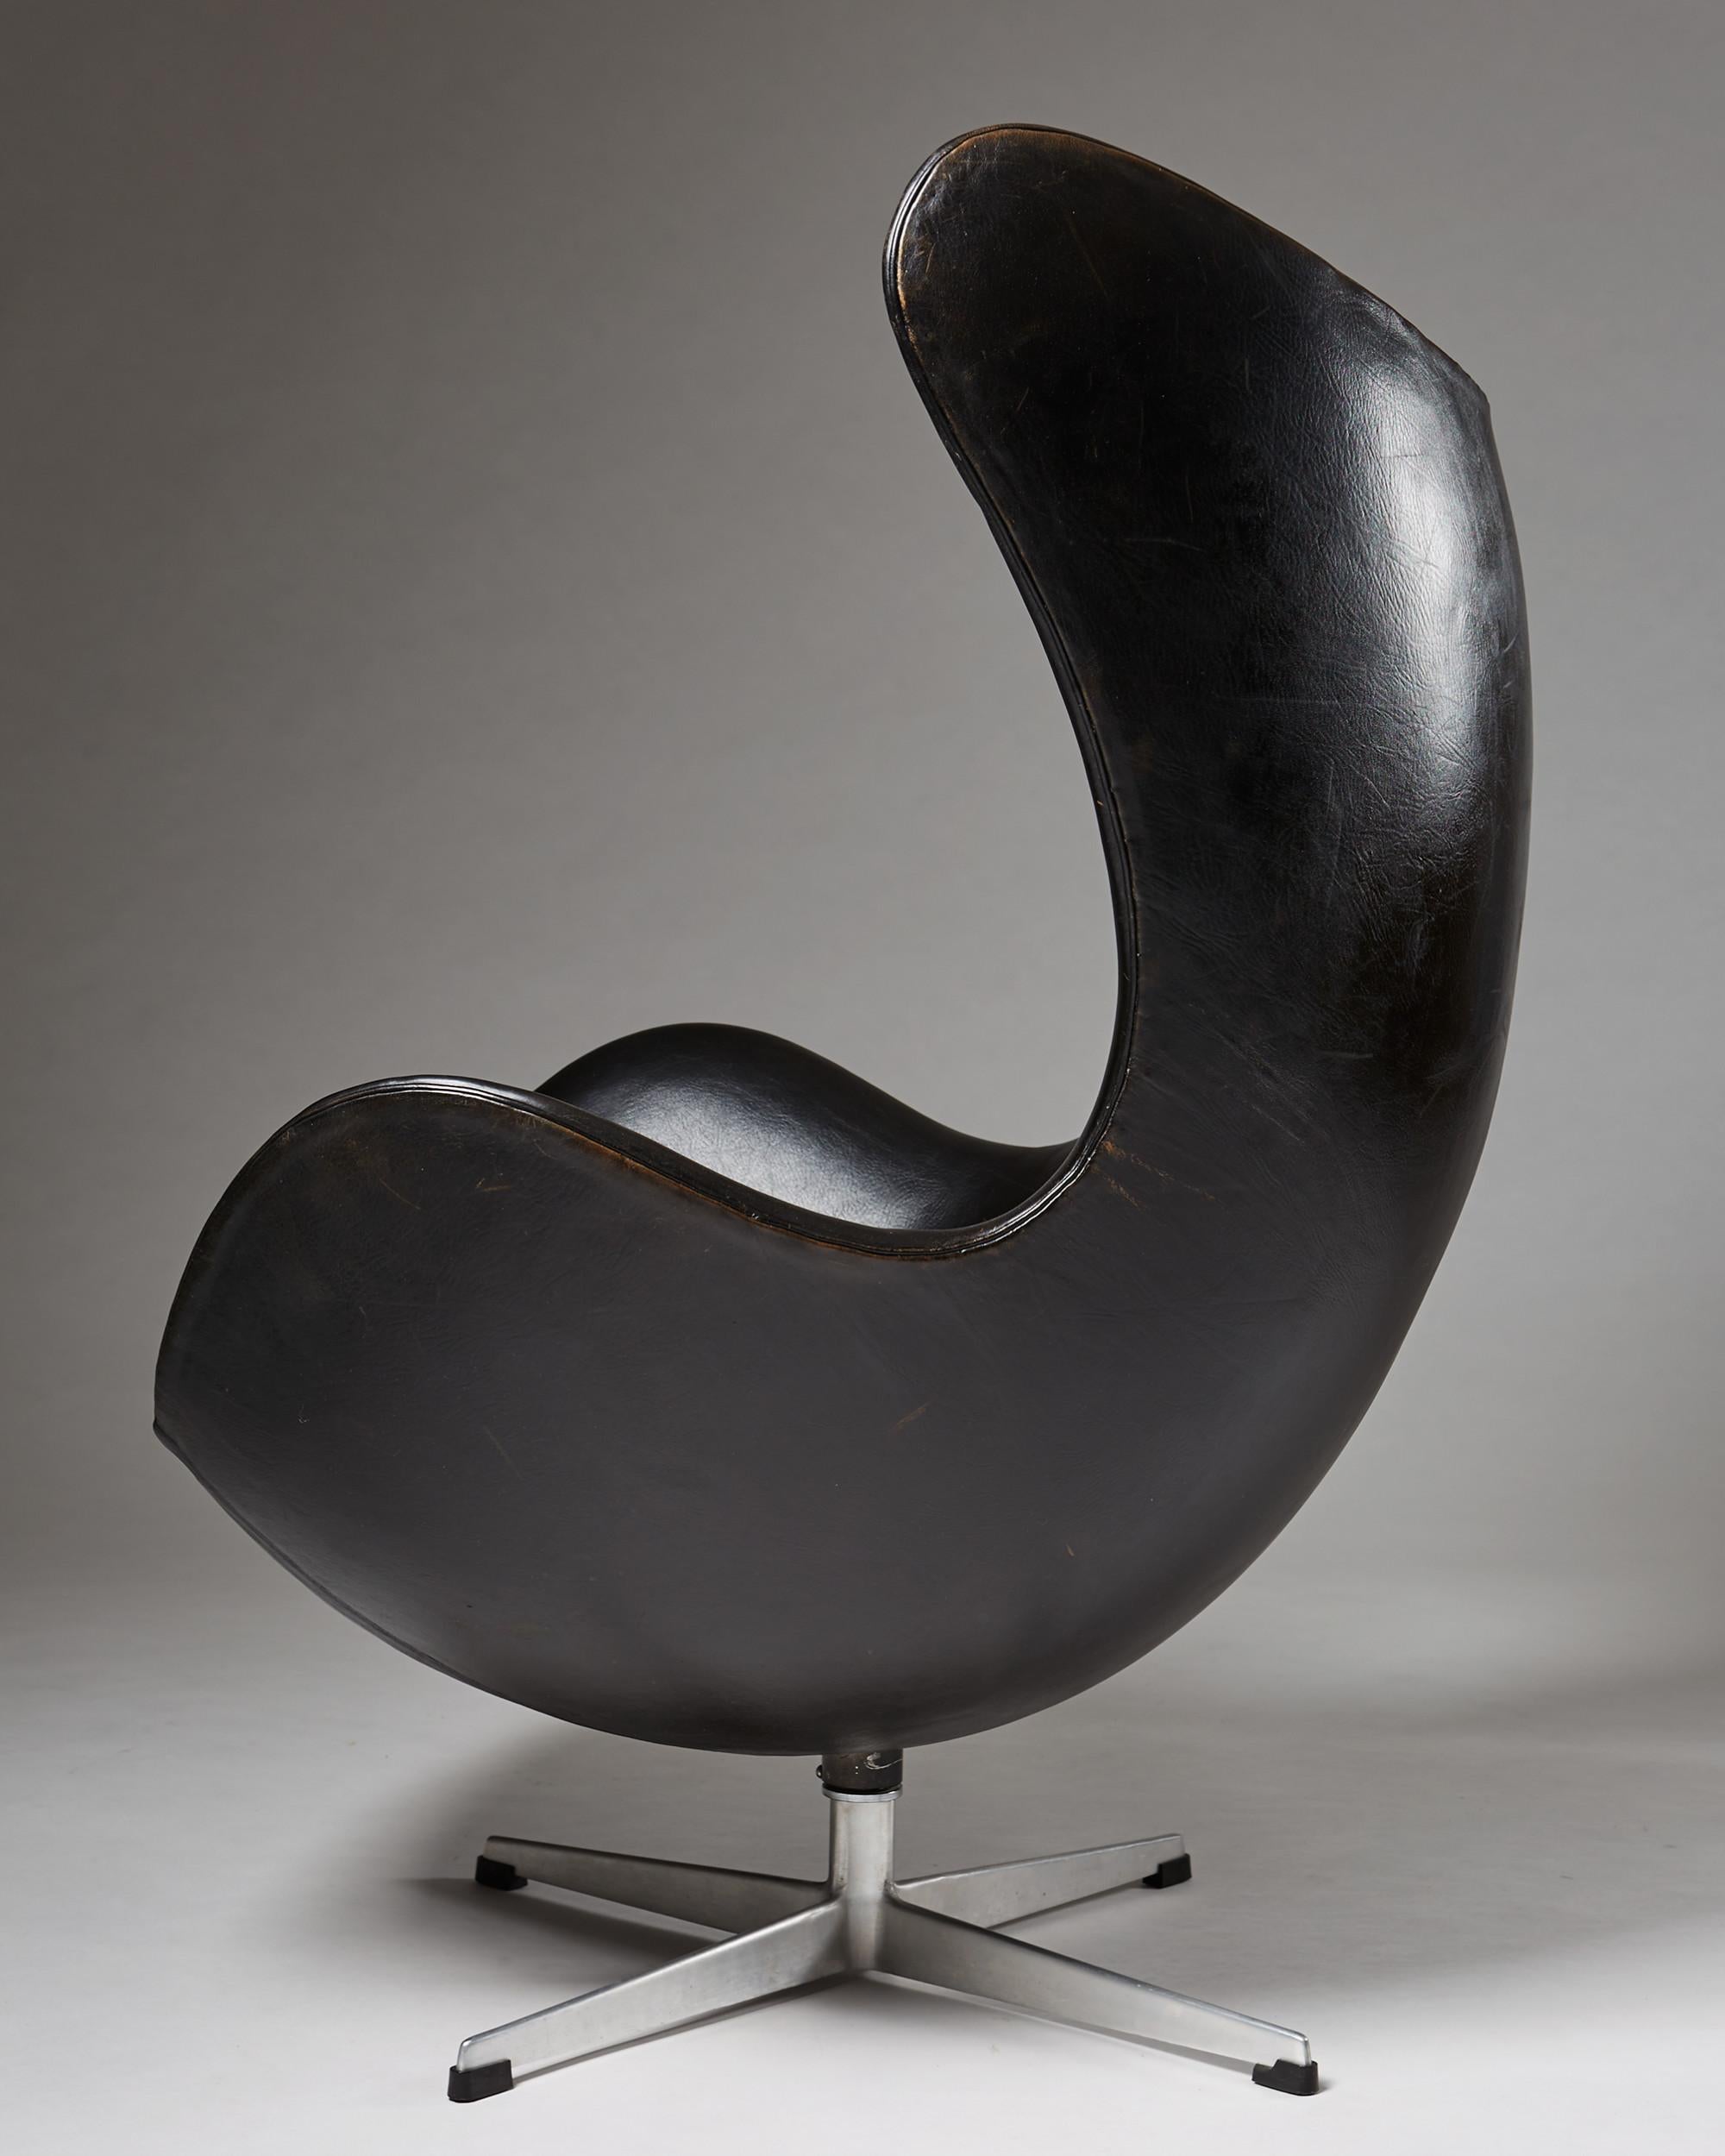 Swedish Armchair “Egg Chair” Designed by Arne Jacobsen for Fritz Hansen, Denmark, 1958 For Sale